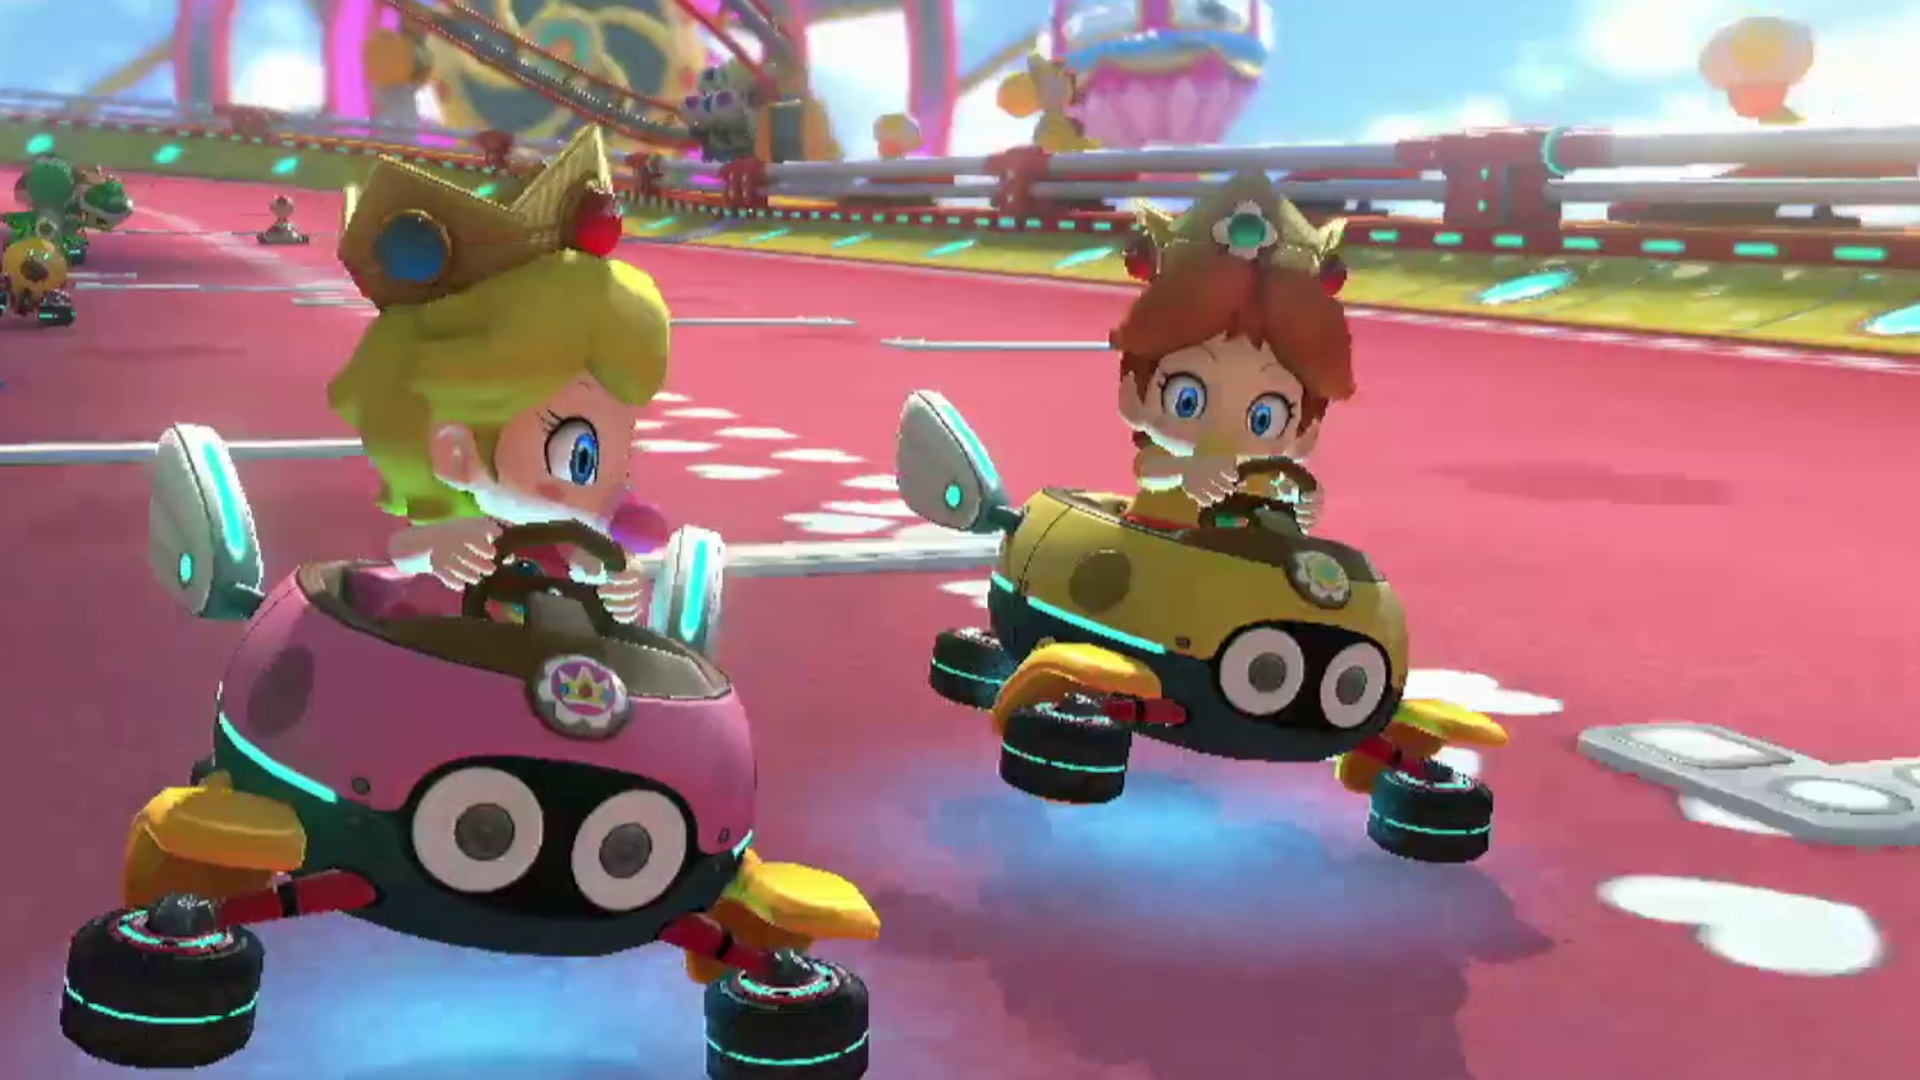 Mario Kart 8 Deluxe, Neue Cups spielen